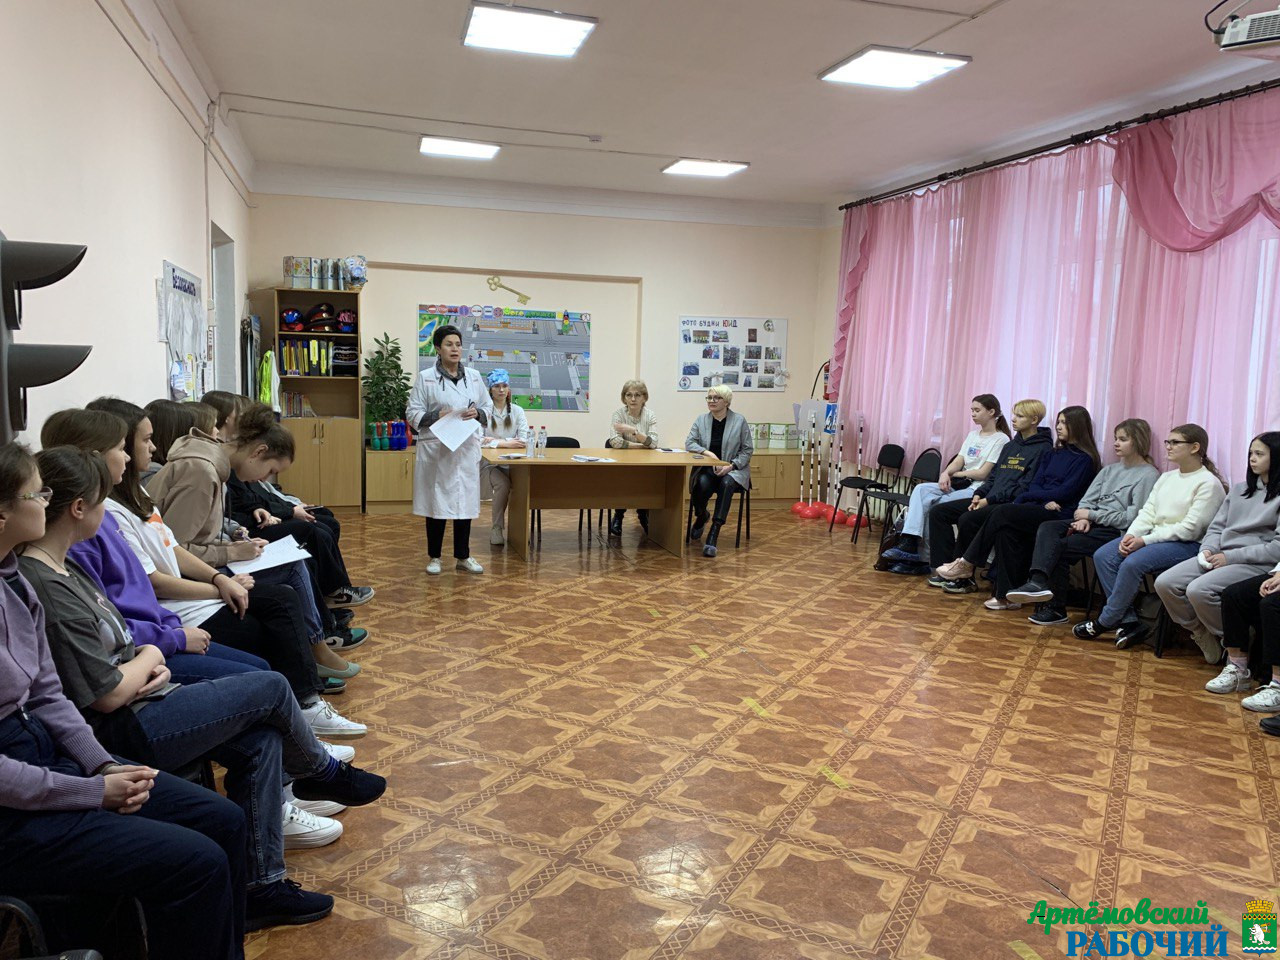  Представители Свердловского областного медицинского колледжа снова встретились с «Младшими сёстрами и братьями милосердия»